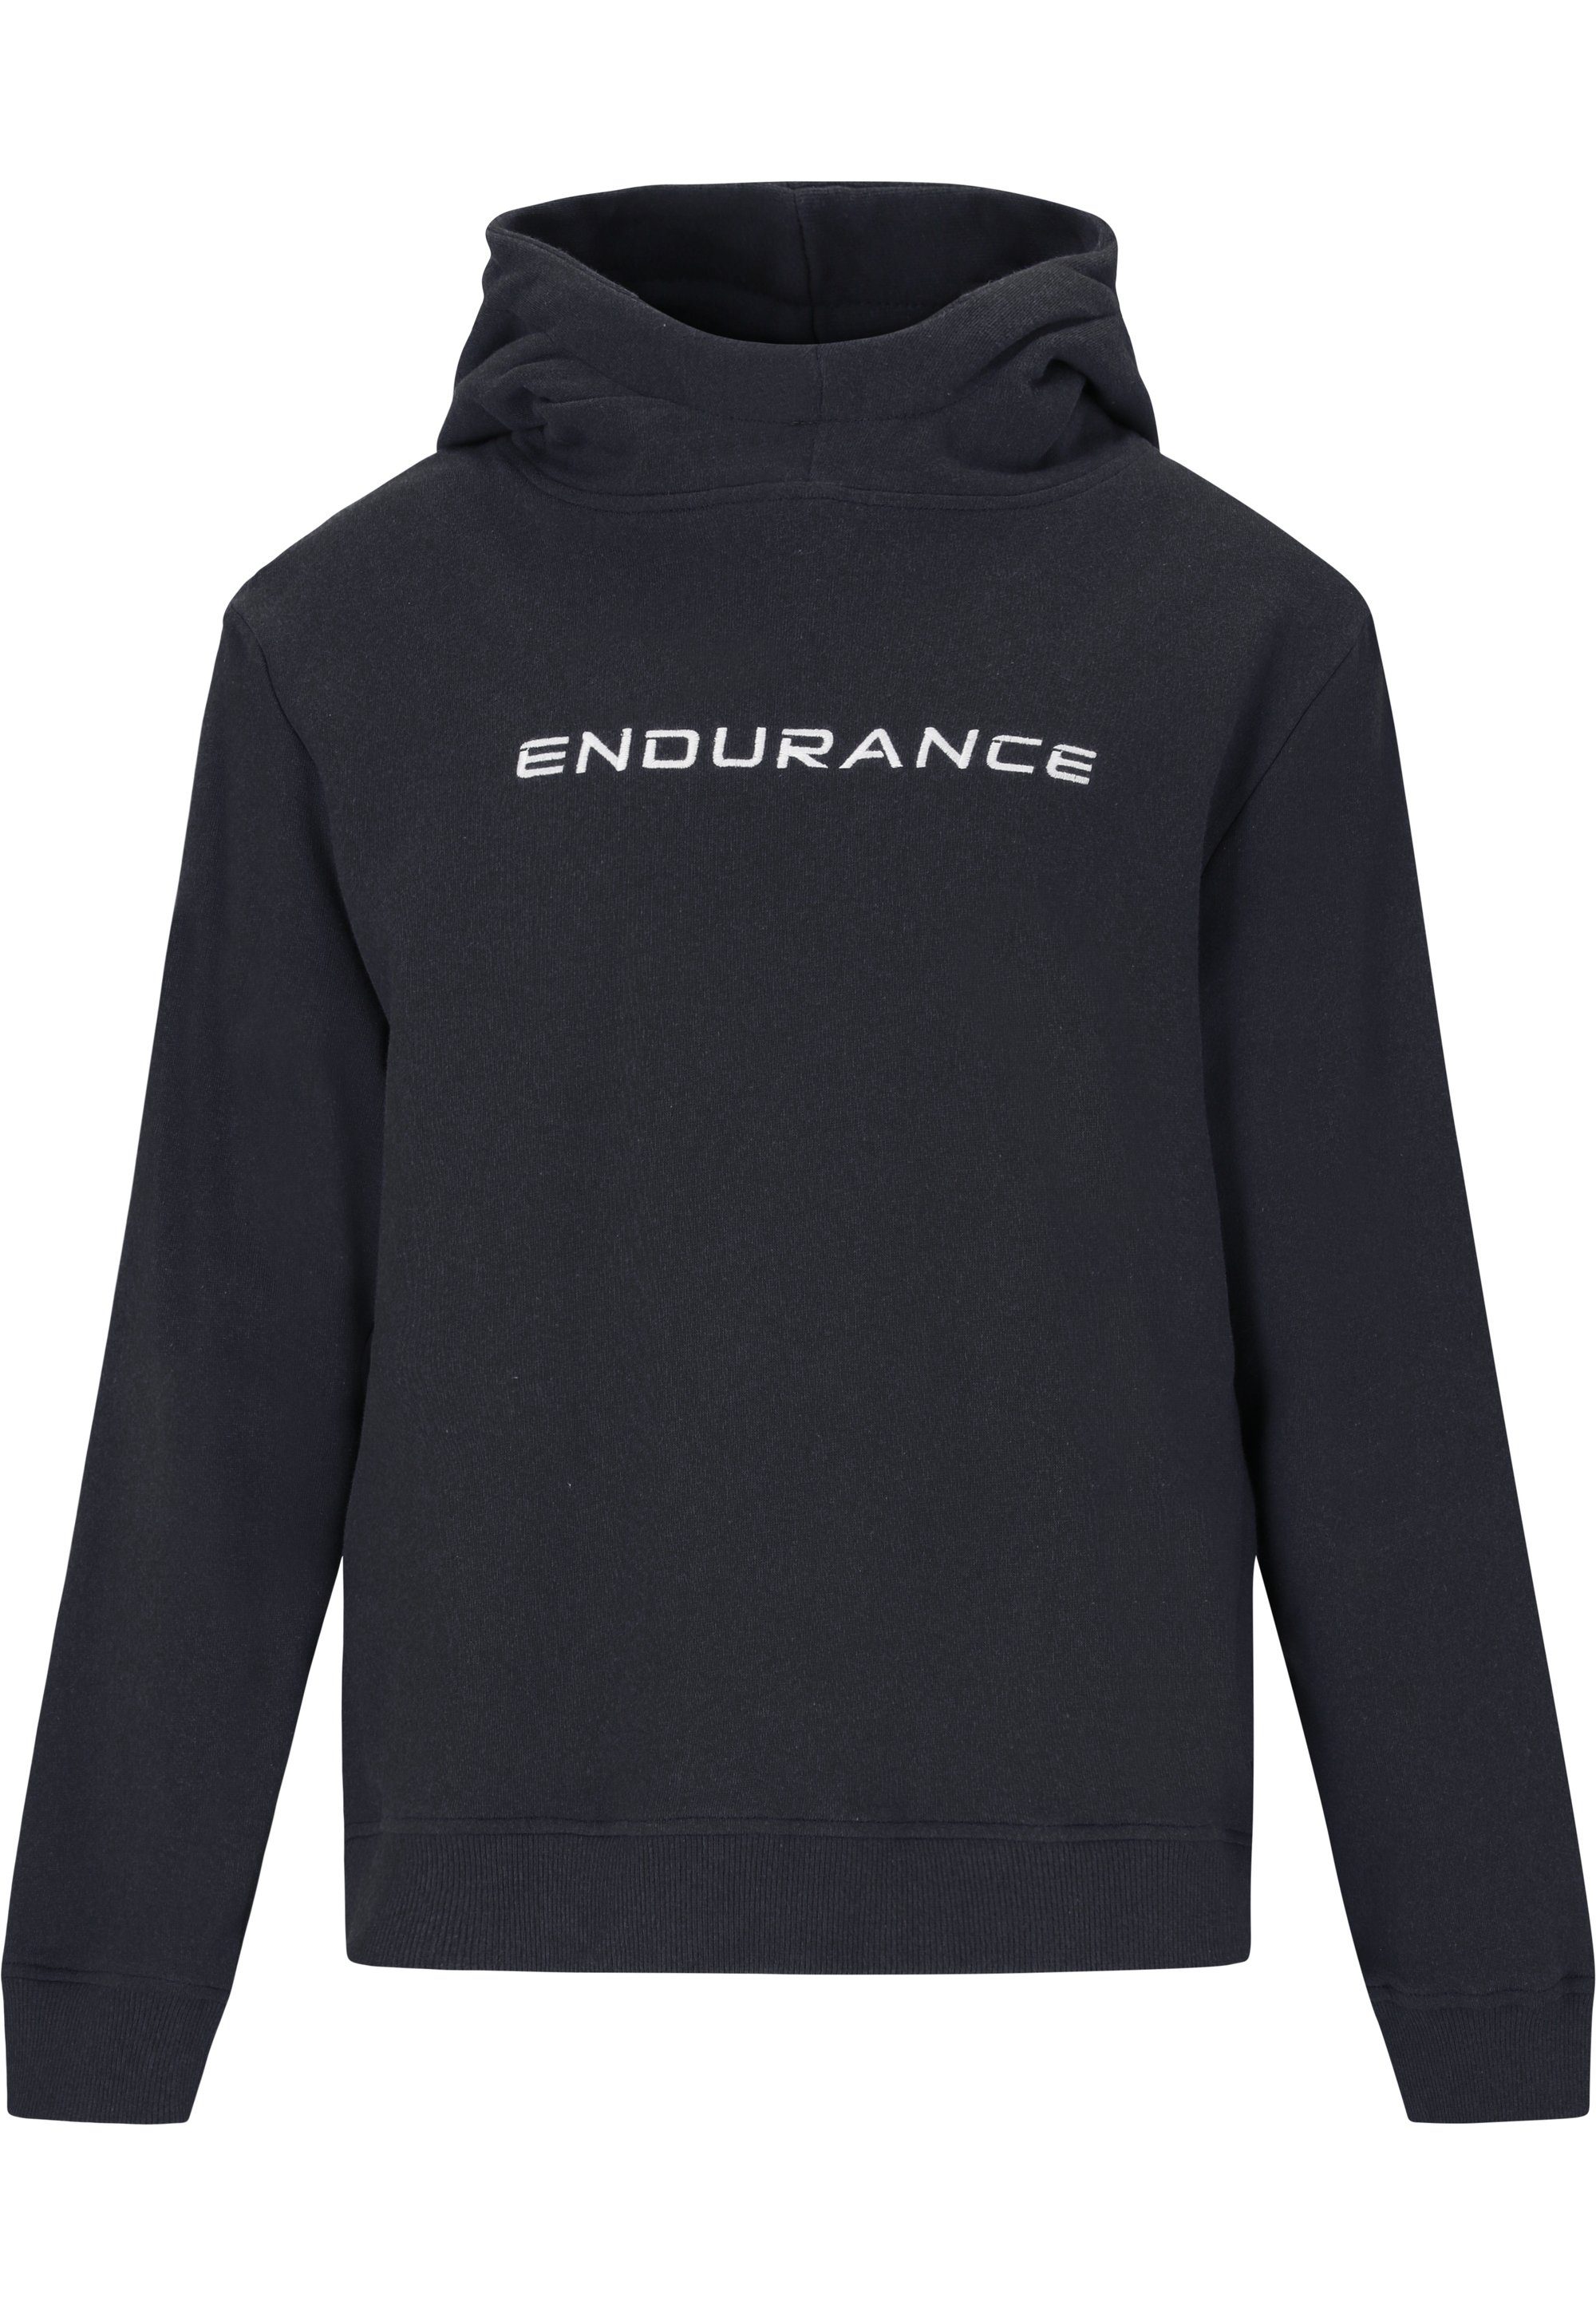 Glakrum mit ENDURANCE Sweatshirt Markenprint sportlichem